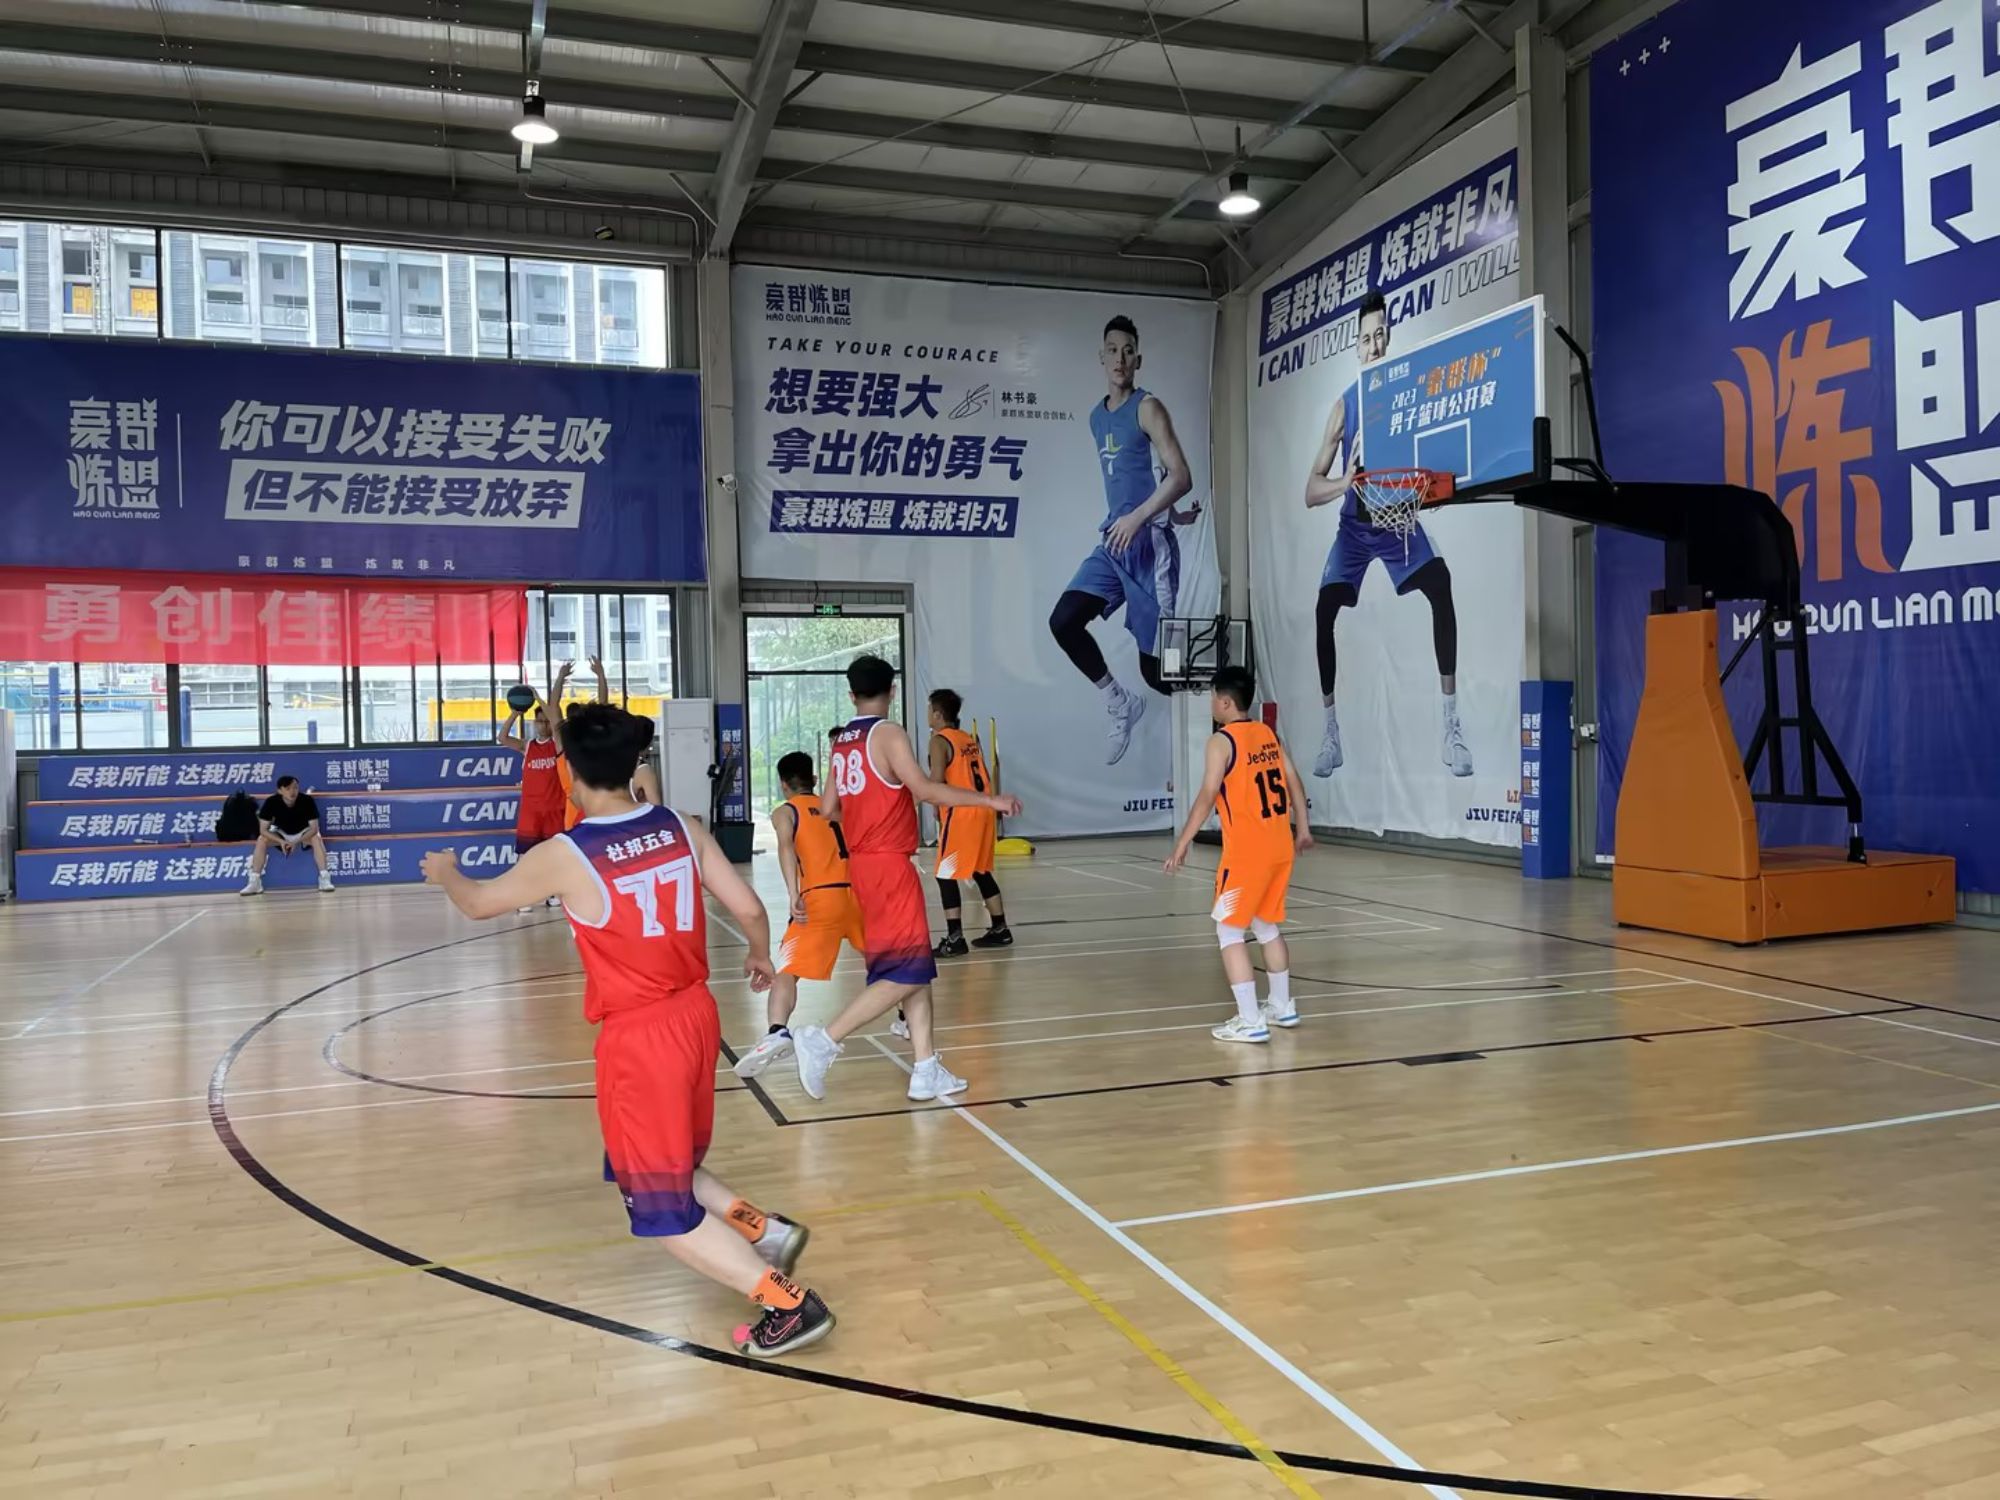 Kochaj życie, kochaj pracę, kochaj ROEASY, trwa konkurs koszykowy dla przemysłu sprzętowego Guangdong